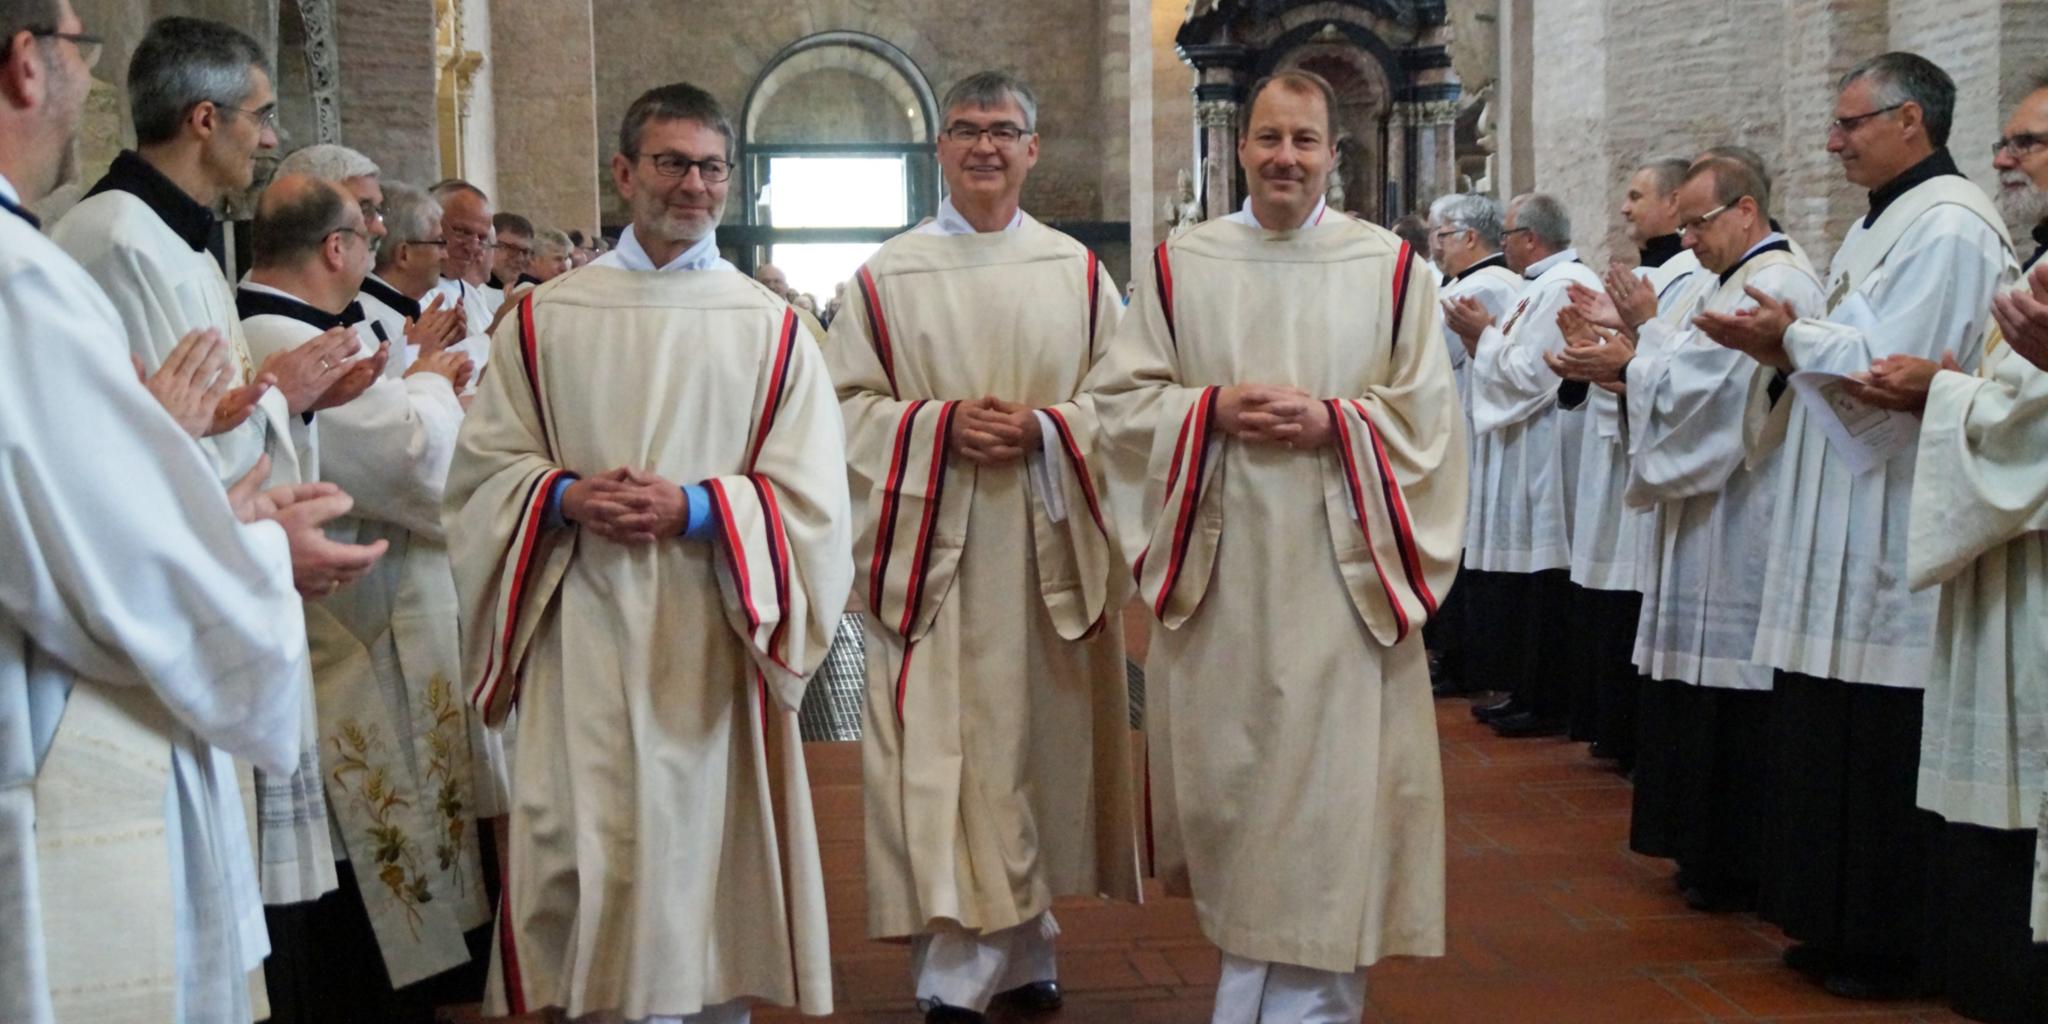 Unter dem Beifall ihrer Kollegen ziehen die neuen Diakone Peter Krämer, Stefan Leinenbach und Sebastian Pollitt (von links) nach ihrem festlichen Weihegottesdienst aus dem Dom aus.